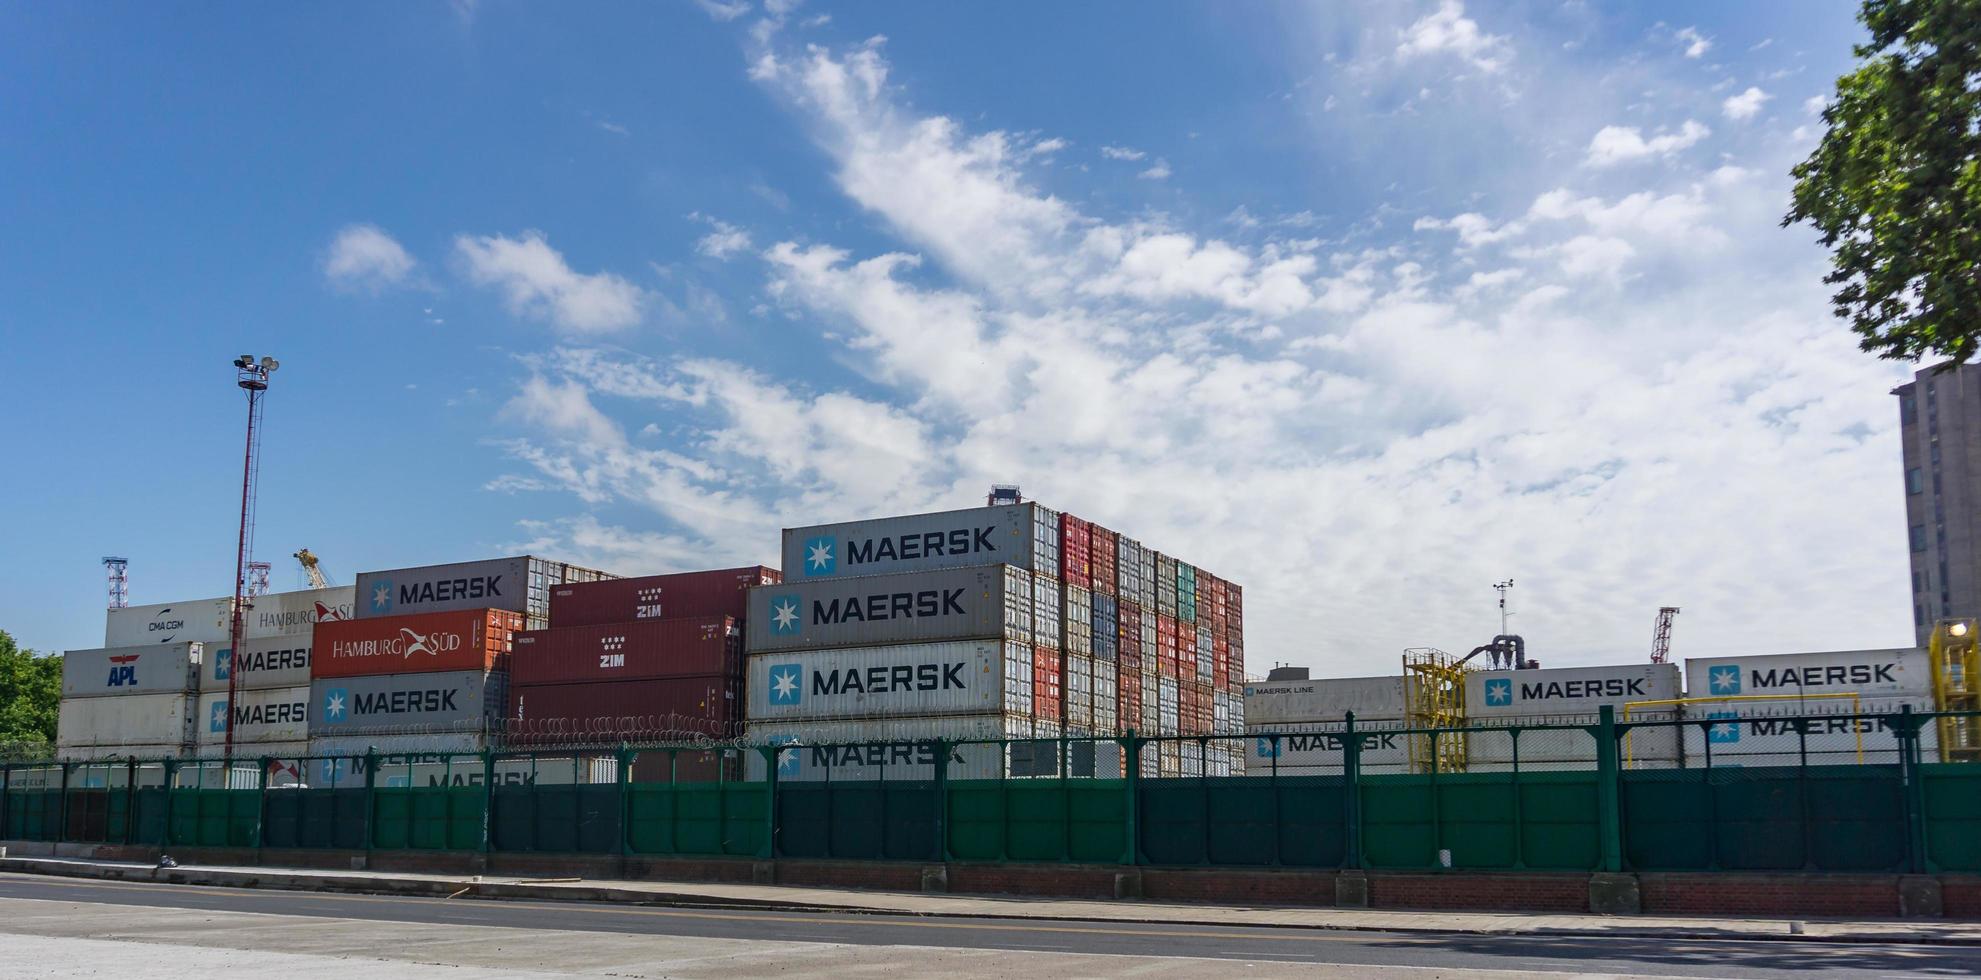 buenos aires, argentinien, 2019. container warten im freien foto